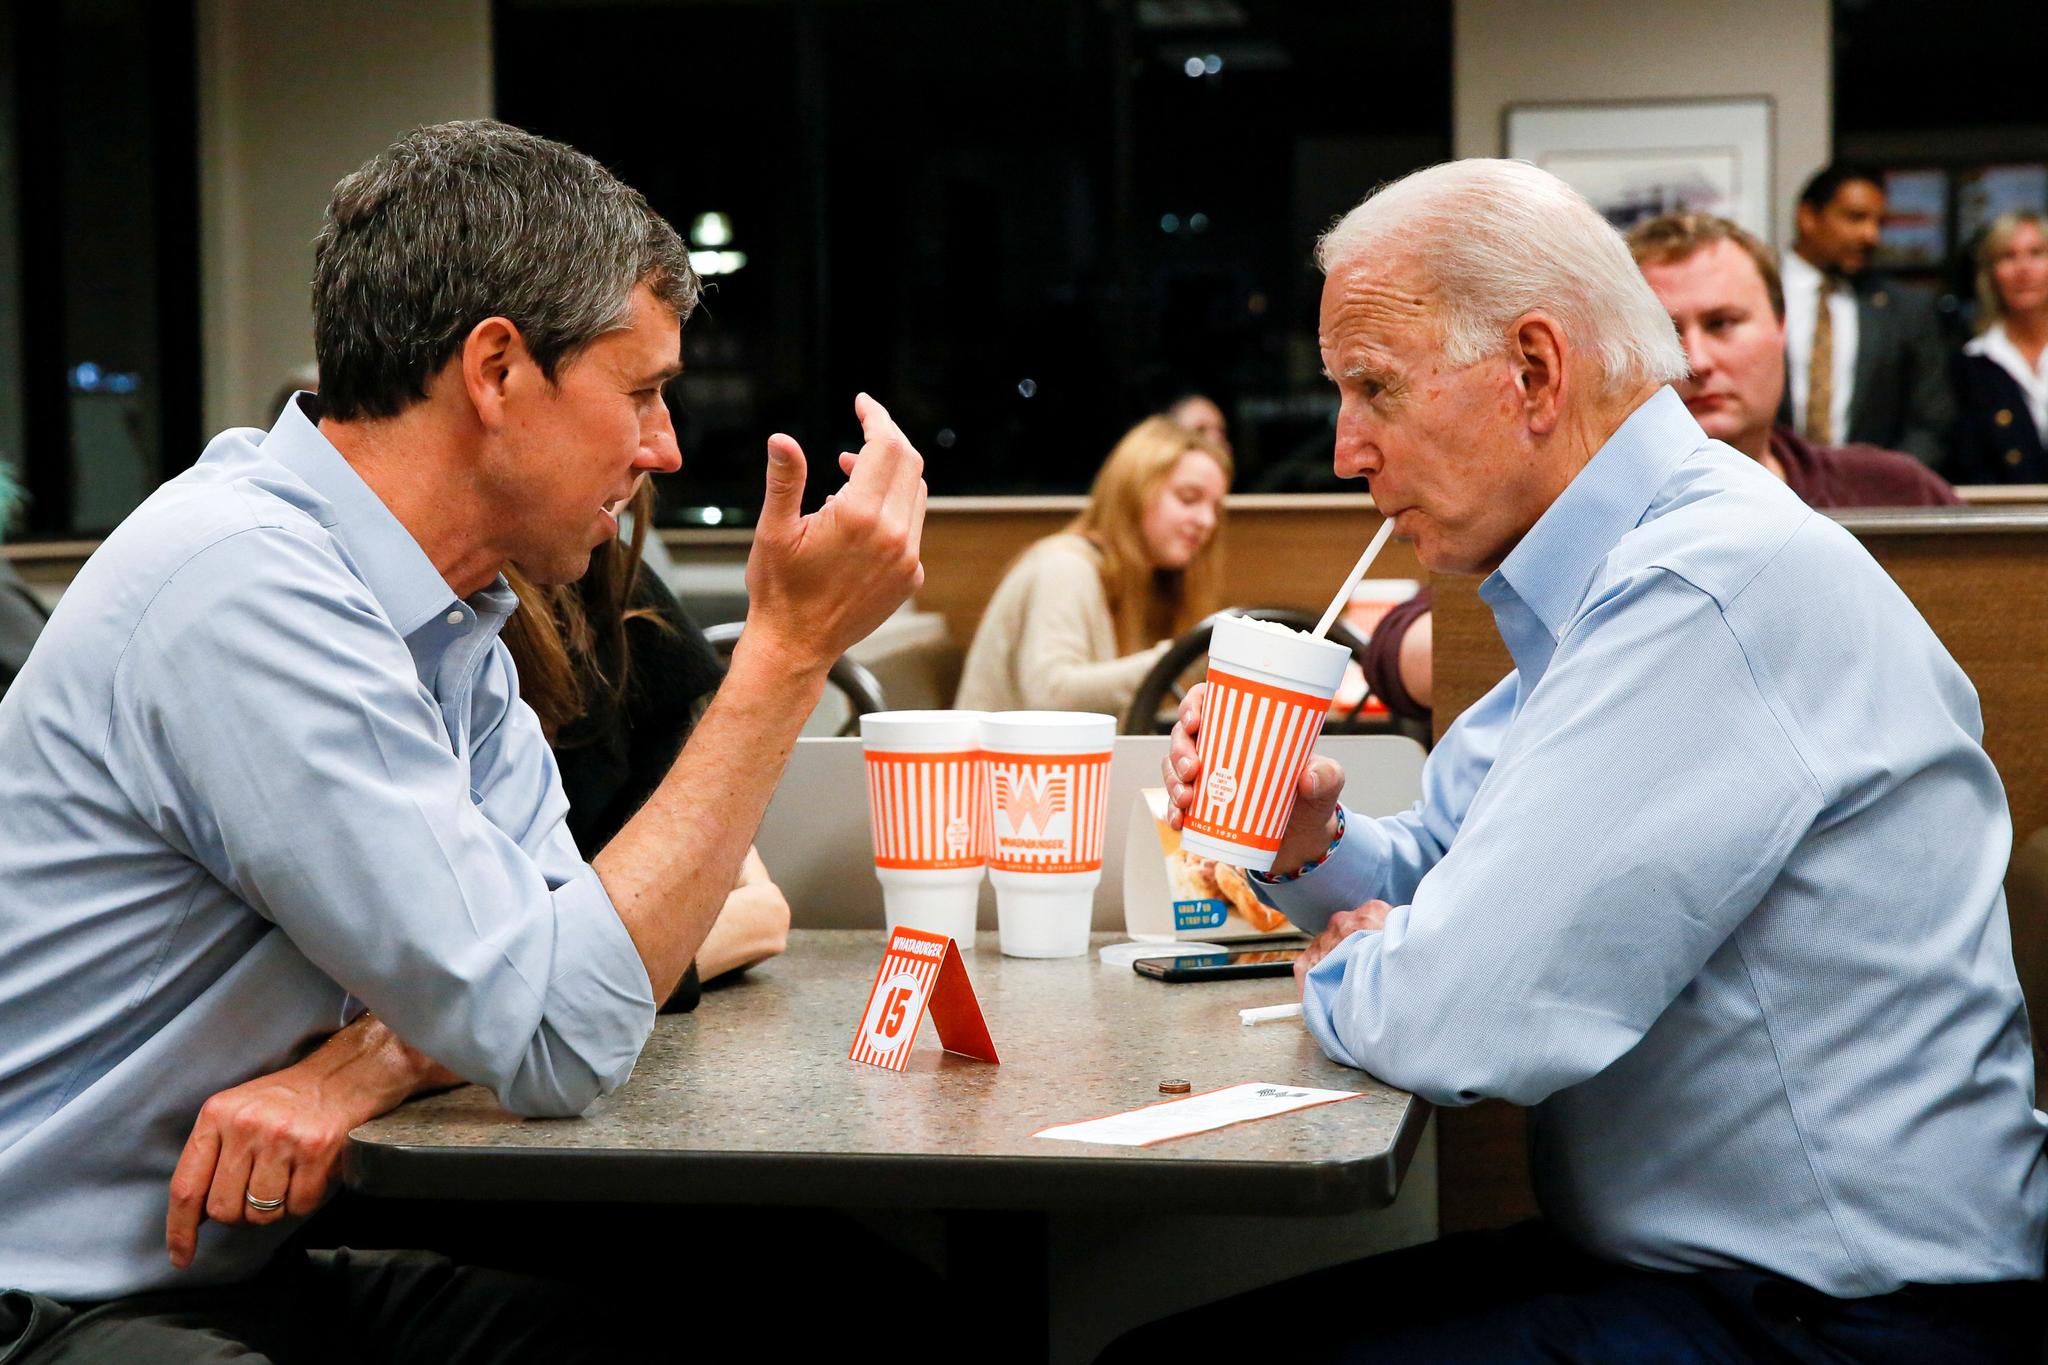 Biden tok en matbit med Beto O’Rourke i Dallas i Texas tidligere denne uken.